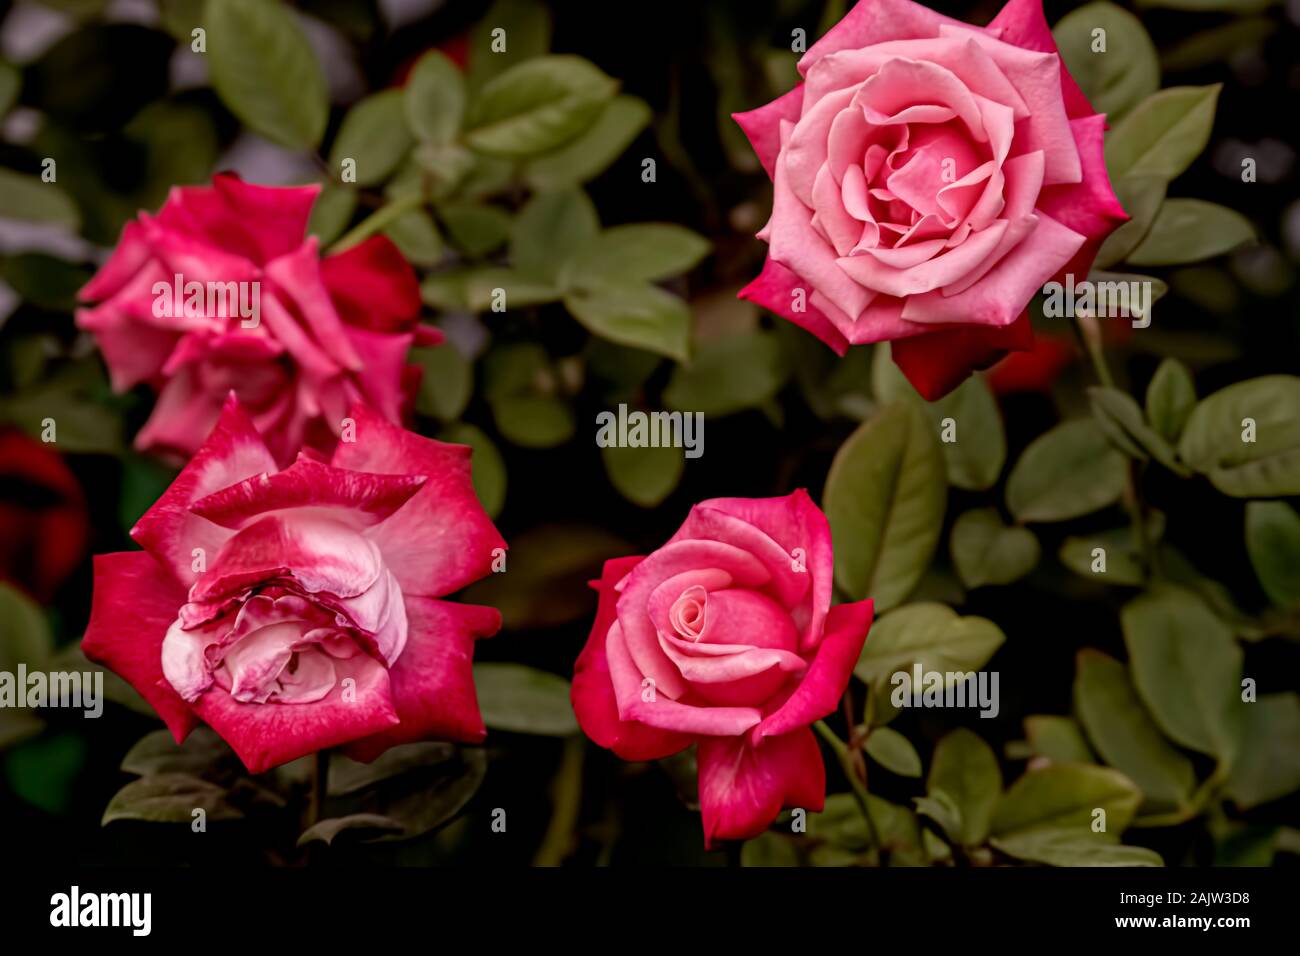 Flower-Roses,name,Keepsake,speciality,having,cottage.garden,feel,richflower,Assembly,annual,show,Kolkata,India. Stock Photo